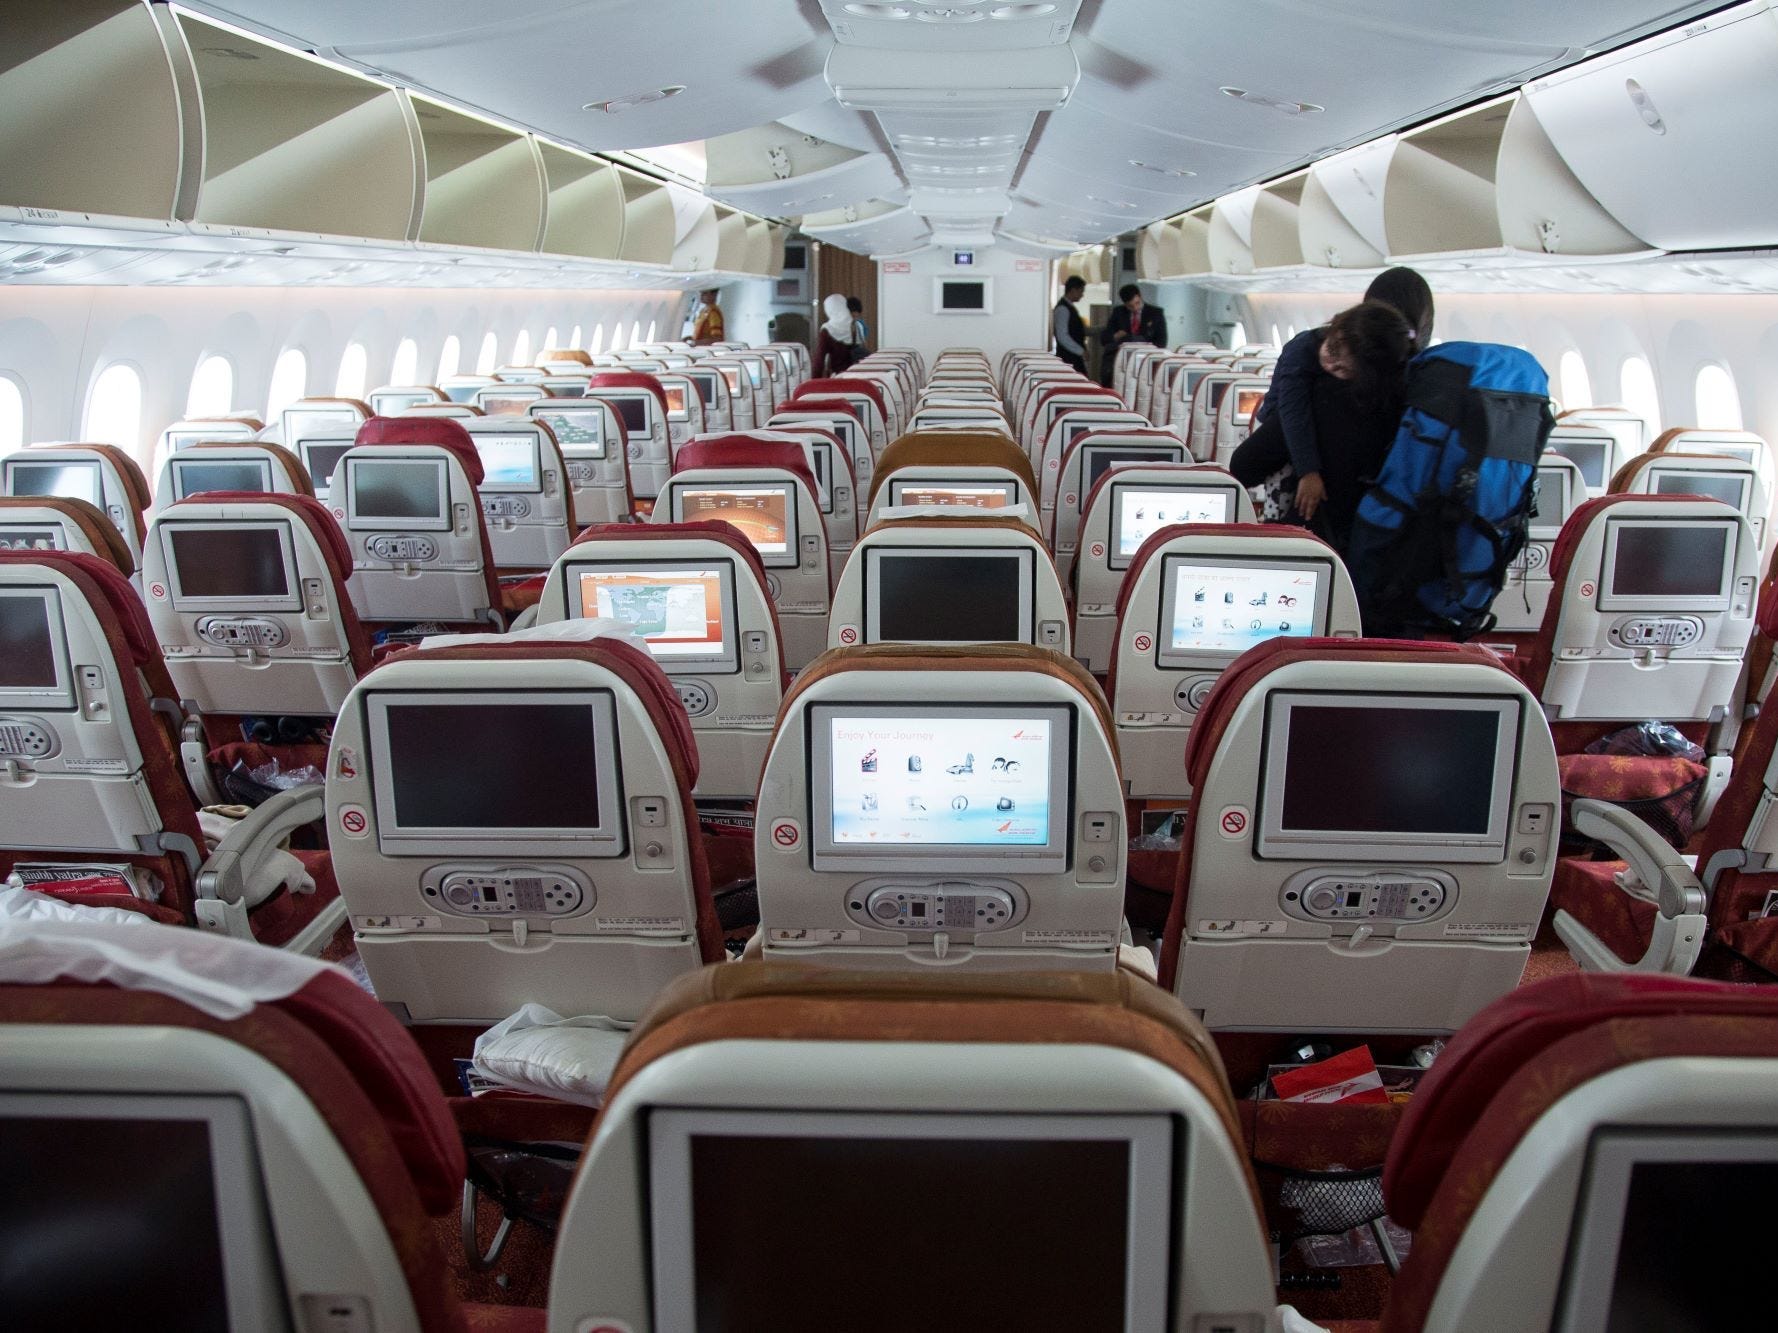 Innenraum der aktuellen 787 mit roten und gelben Sitzen und veralteten Bildschirmen.